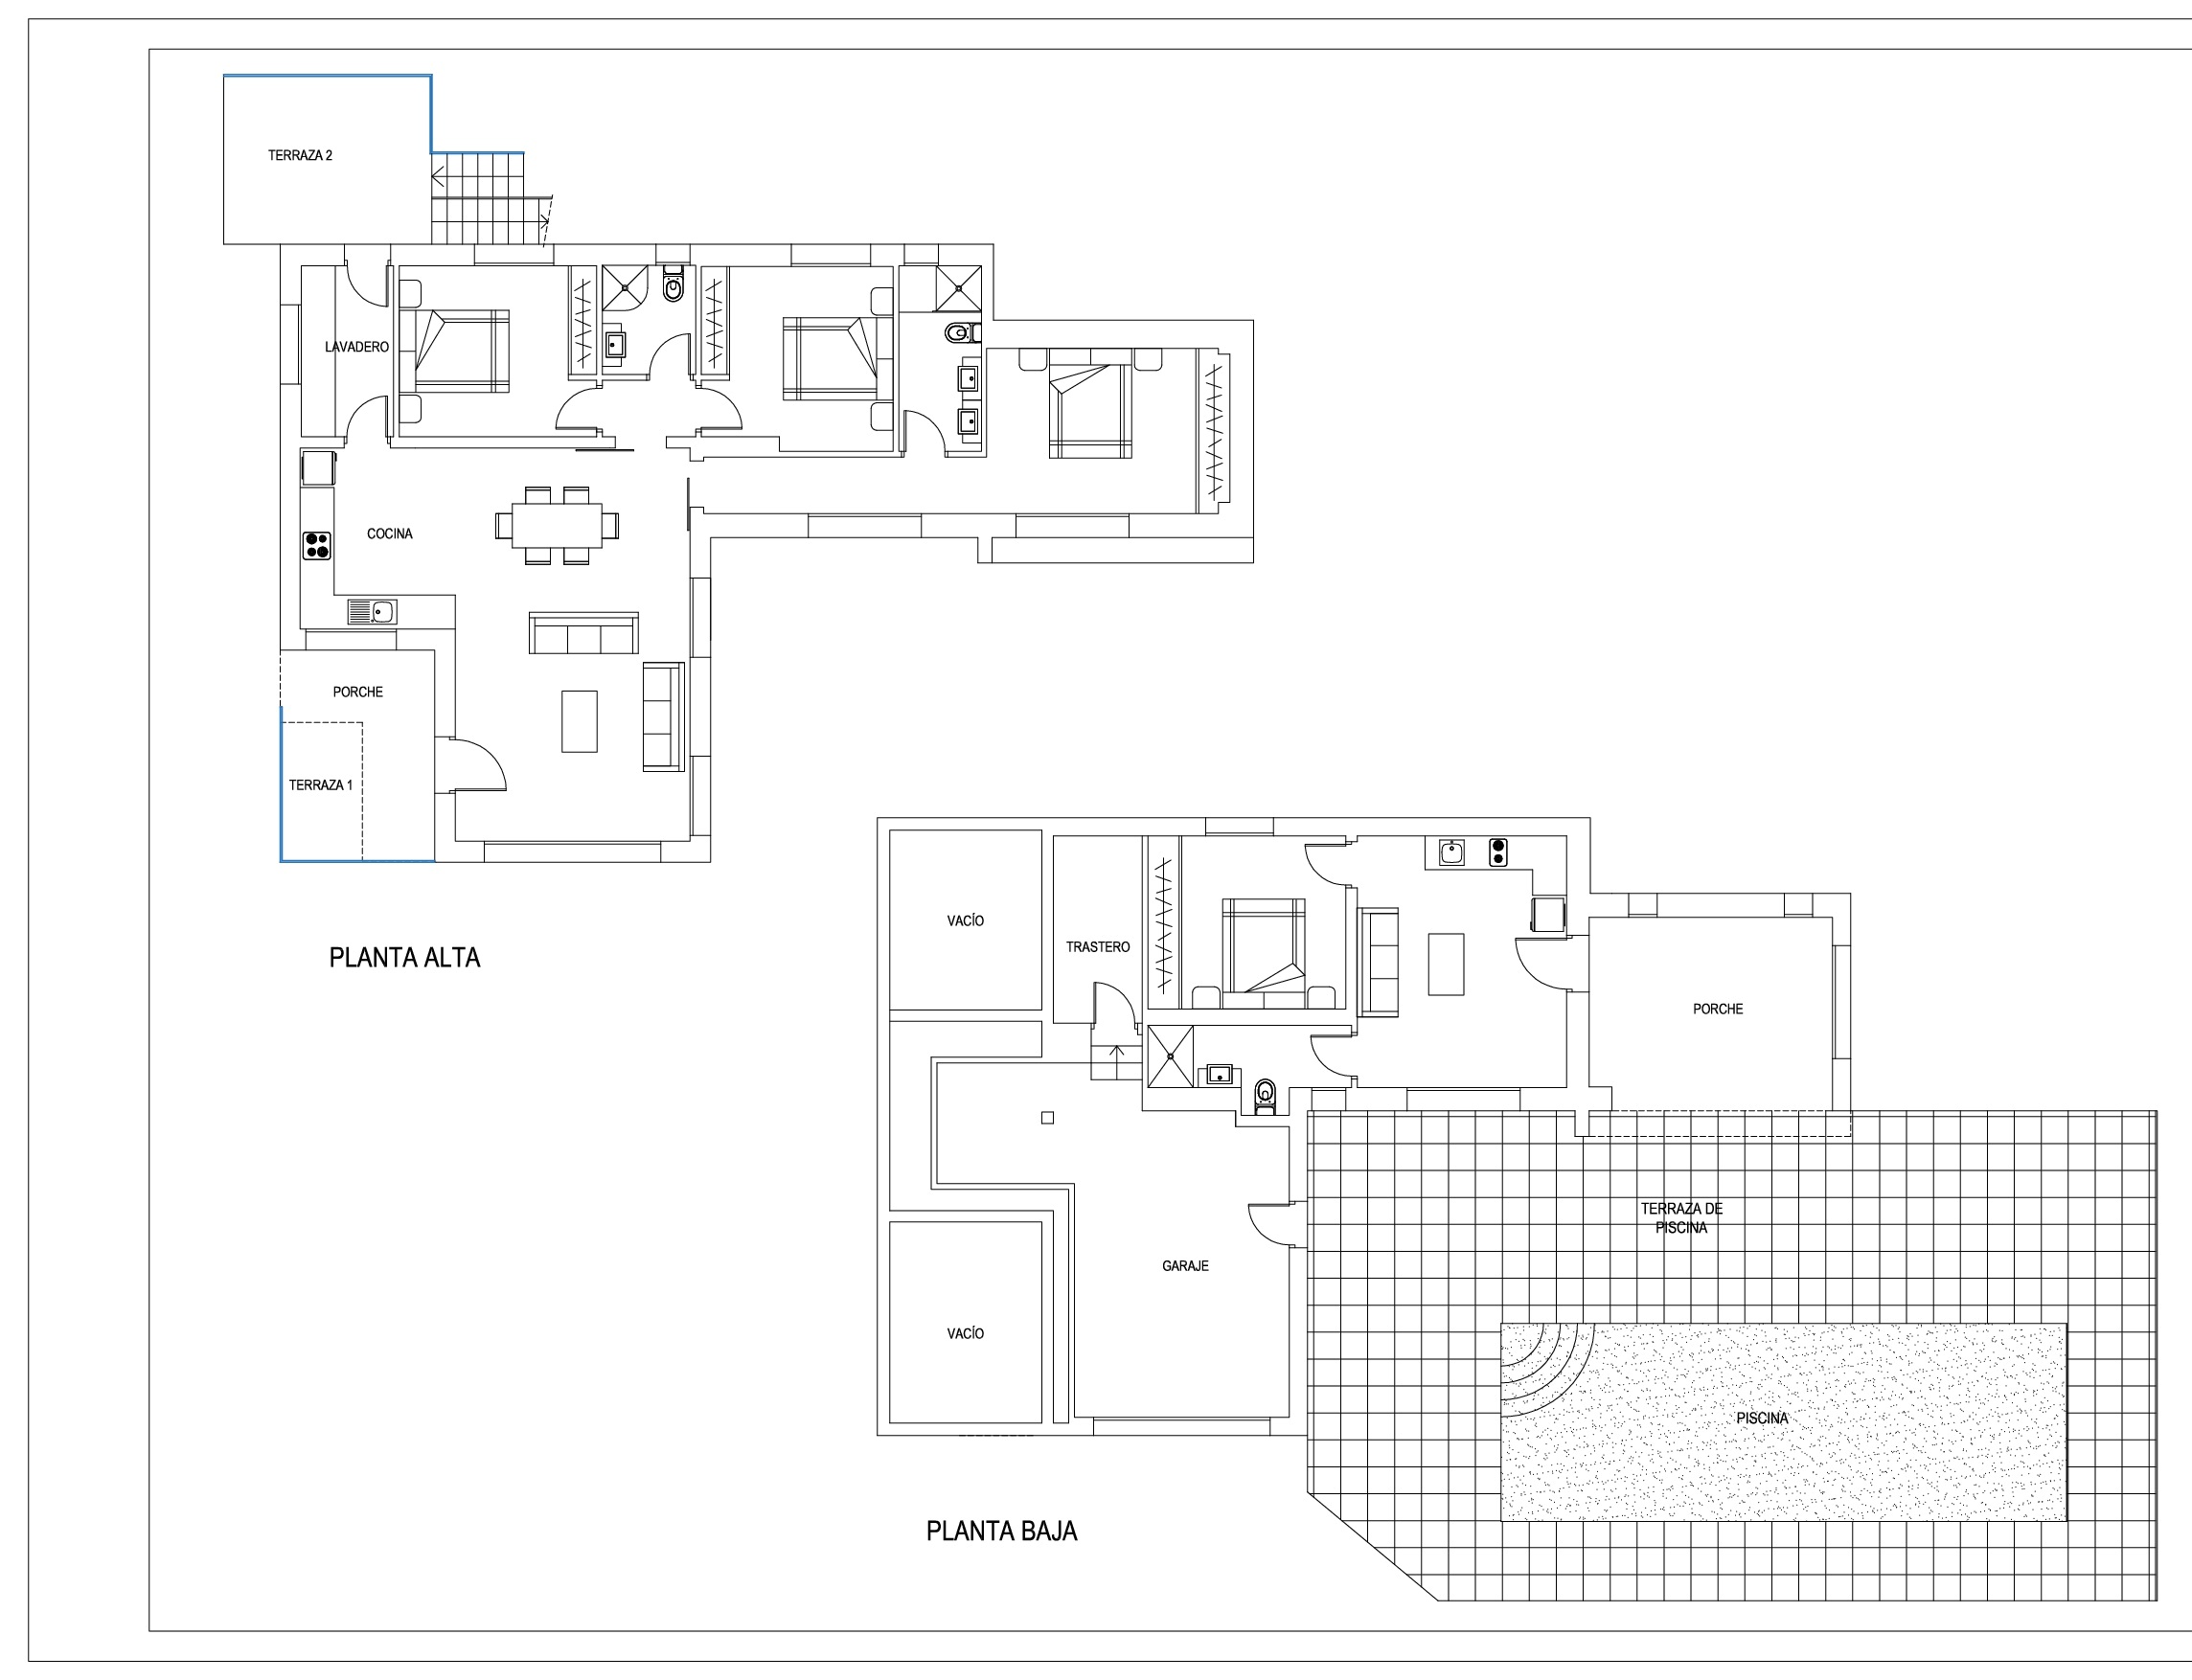 Schitterende 4-sl.kamervilla in Moraira te koop voor 790.000 euro